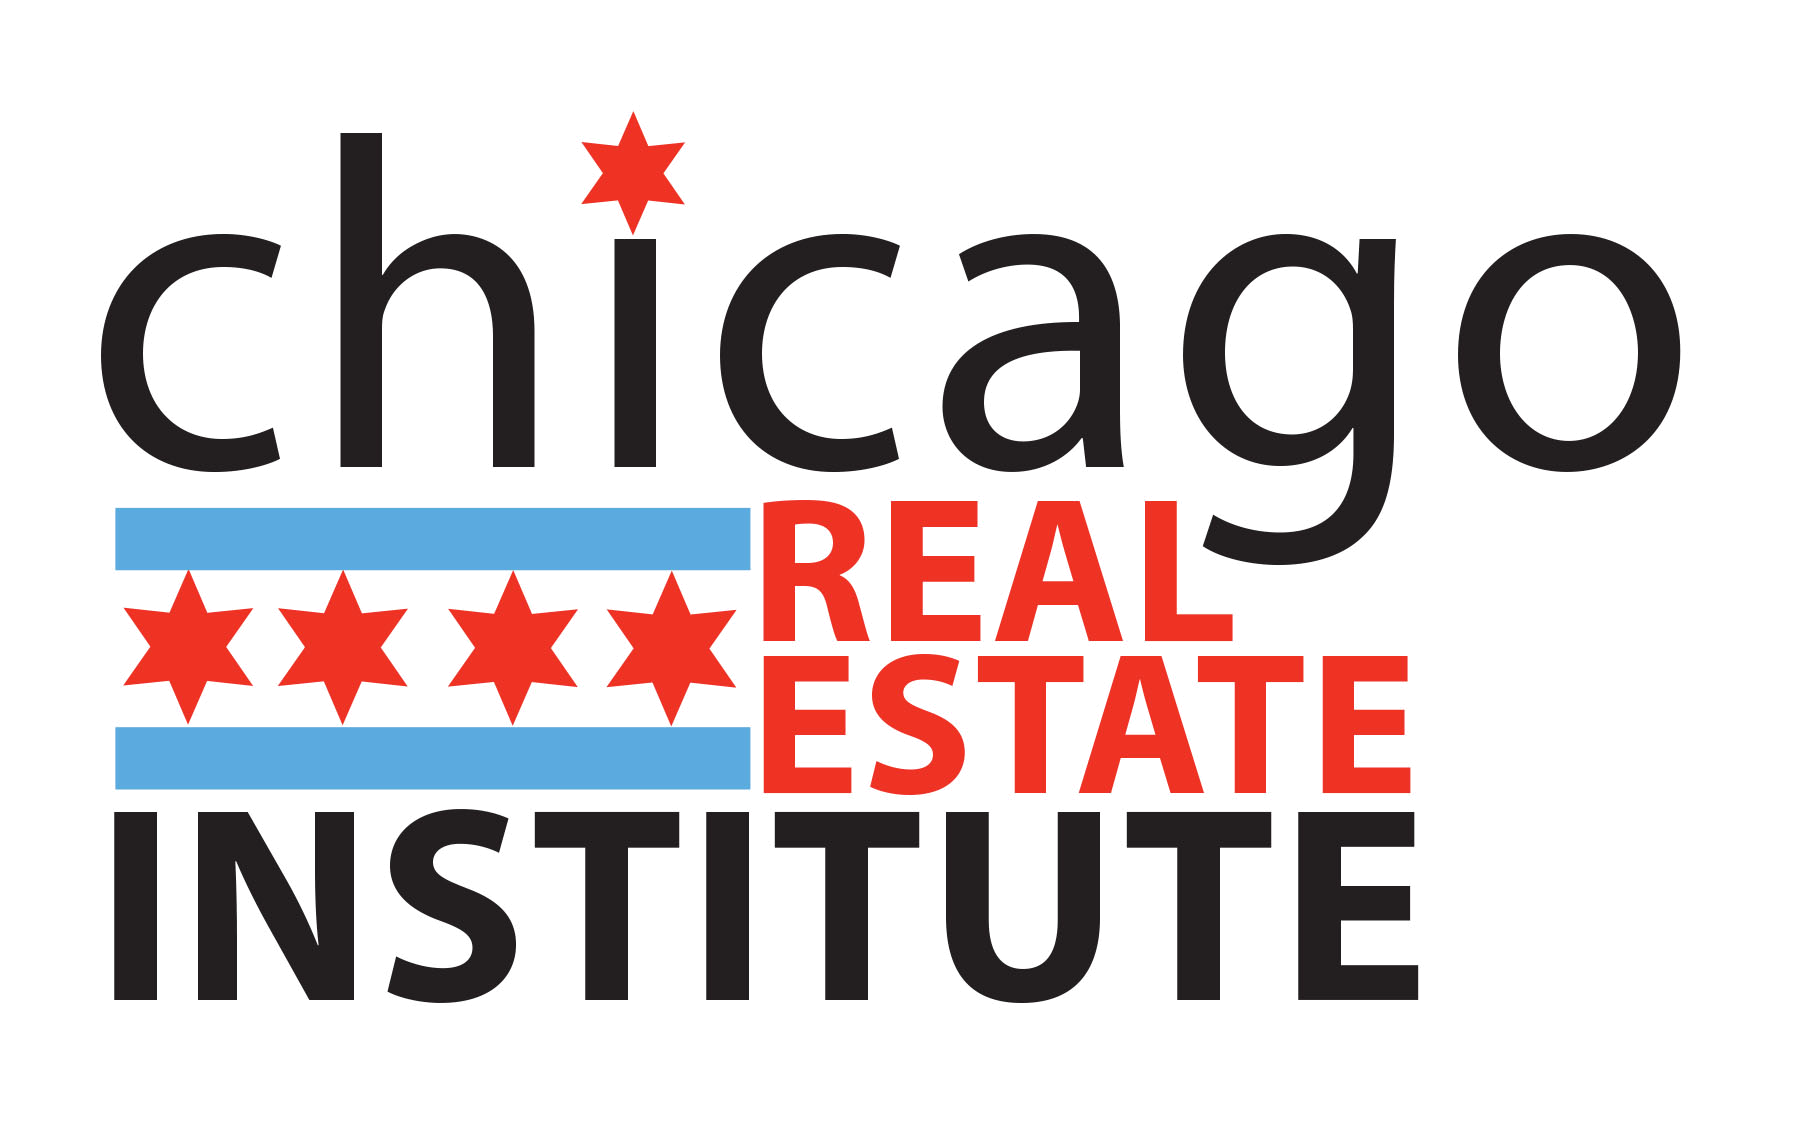 Chicago Real Estate Institute - Logo